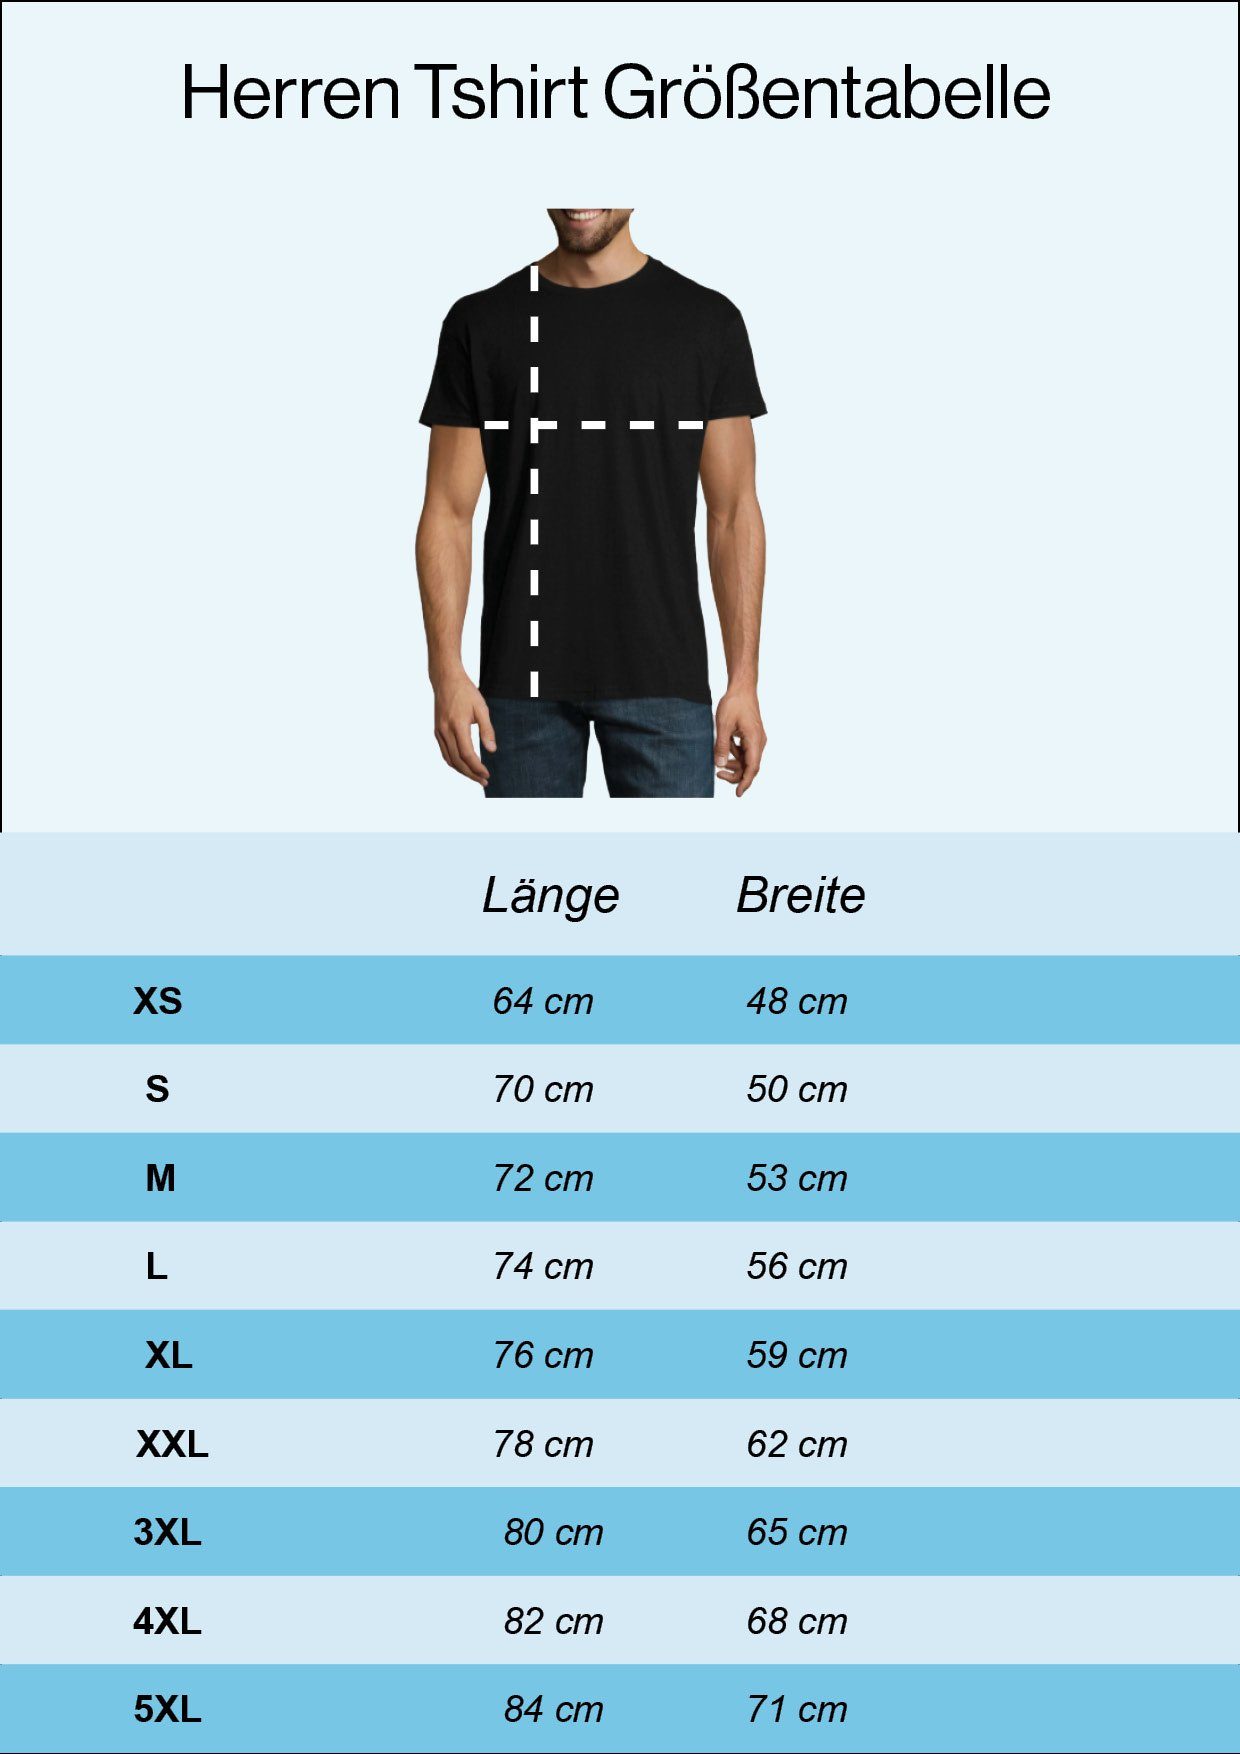 Designz Retro Weiss Youth T-Shirt Frontdruck Cannabis Herren T-Shirt mit Trendigem